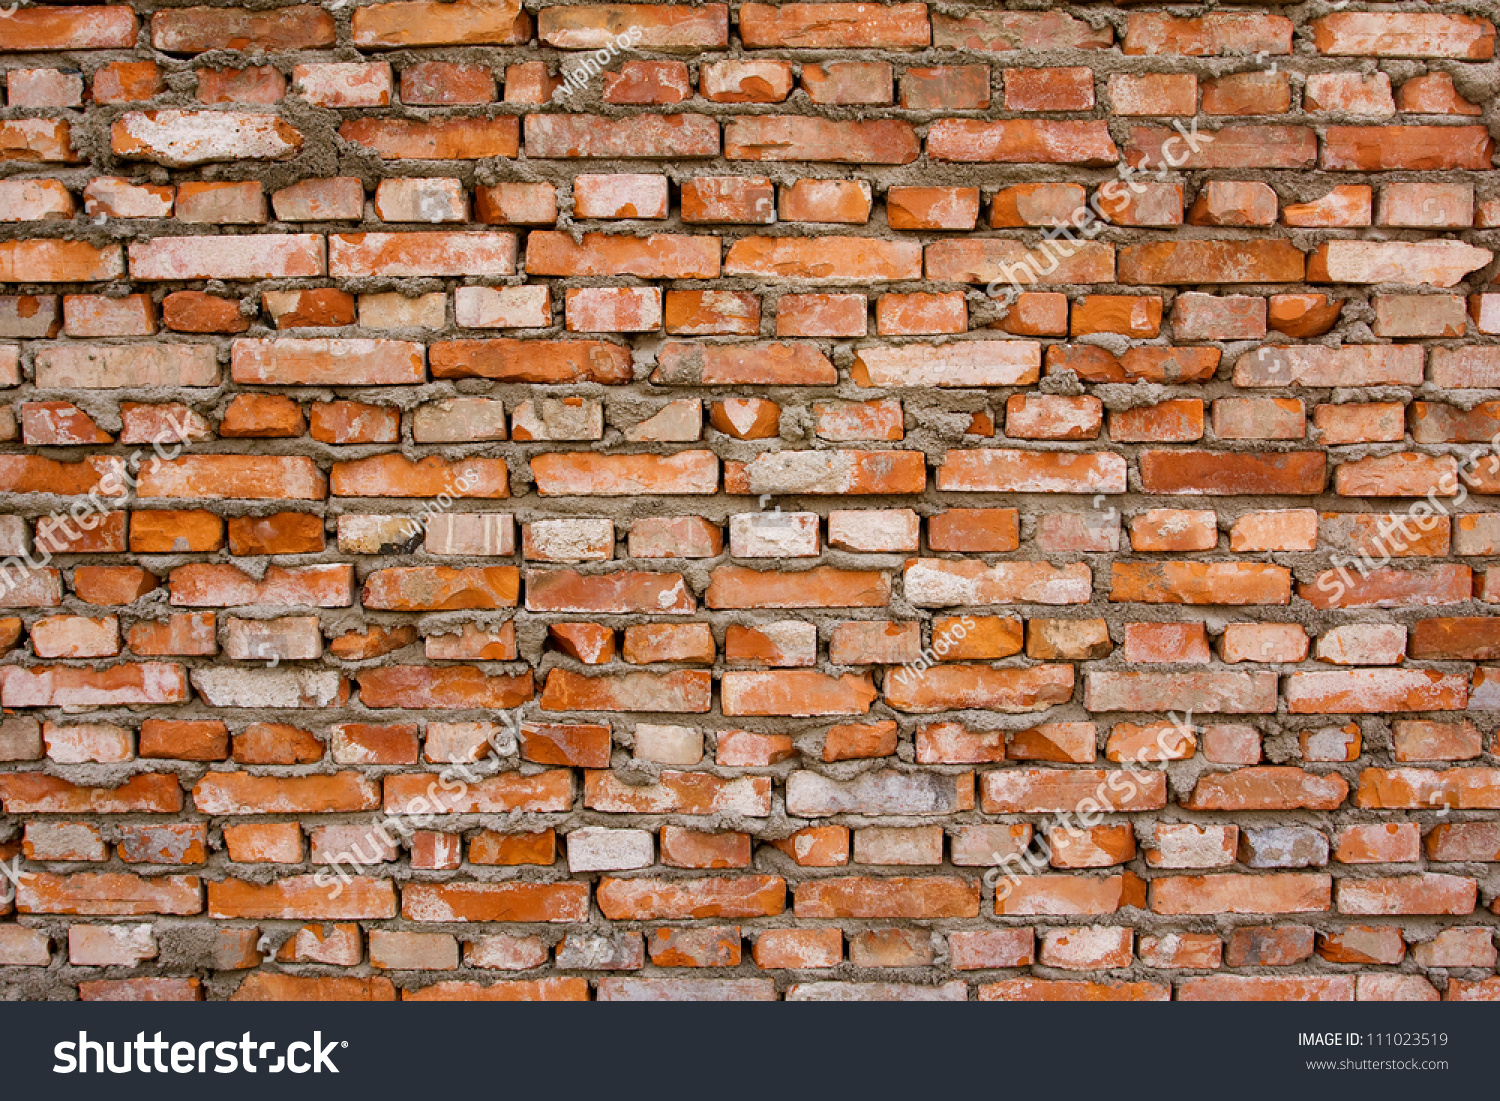 Red brick background textured #111023519